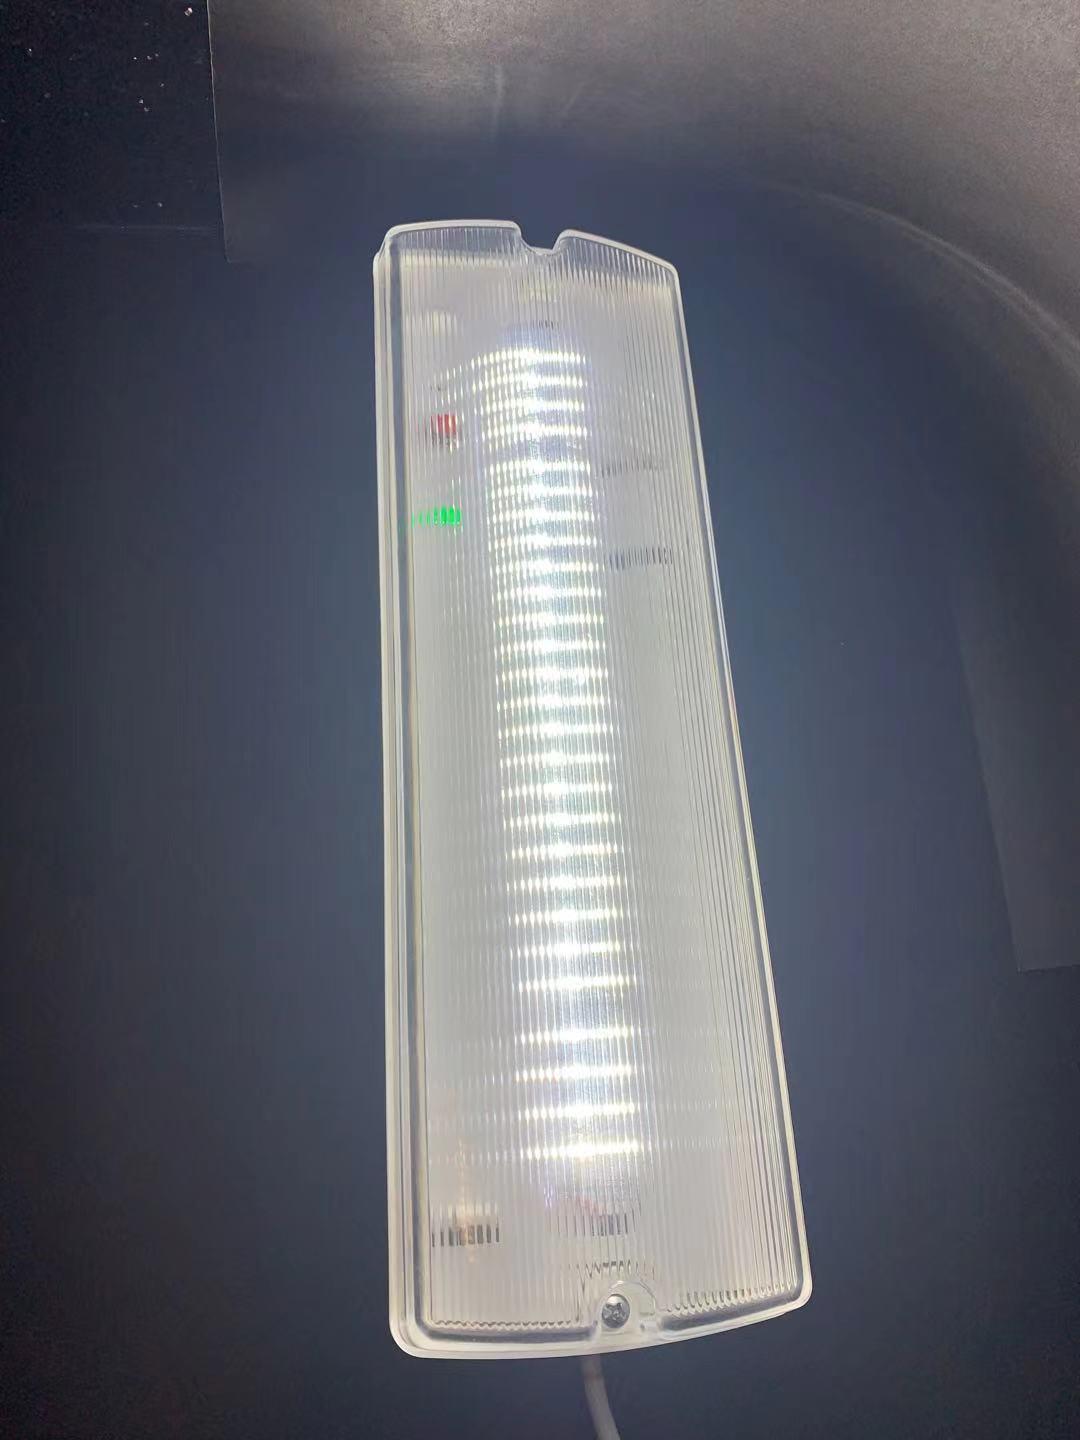 Prueba de agua del tabique hermético de la batería recargable de la emergencia del LED no mantenida